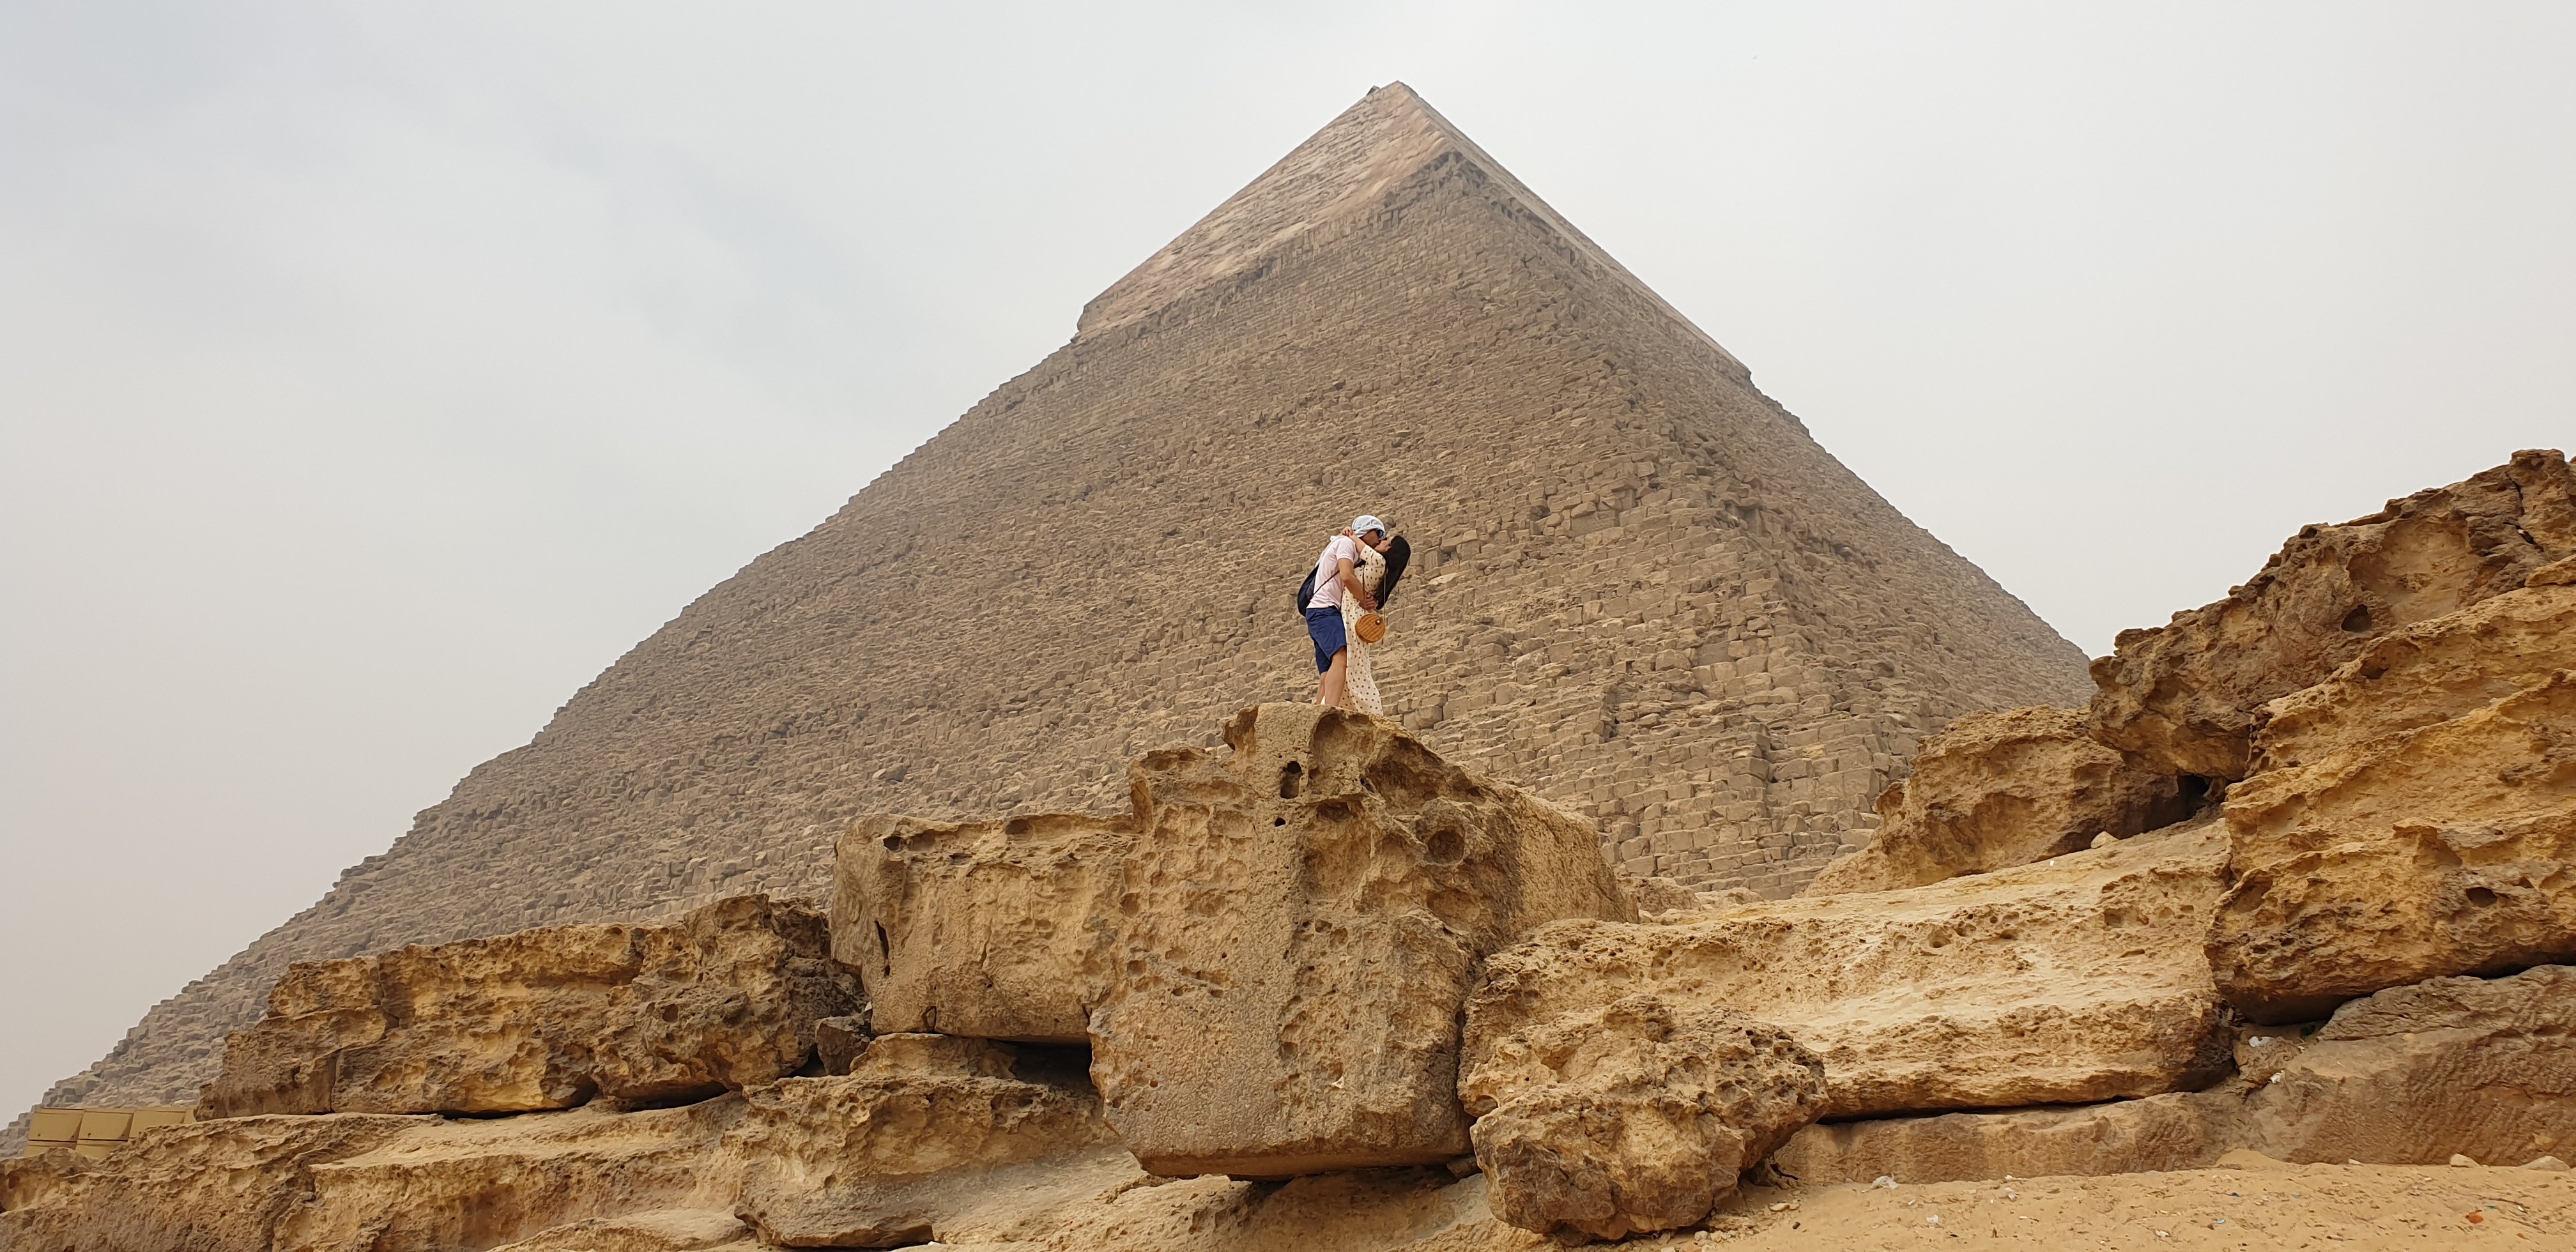 Con la pirámide de Kefrén al fondo